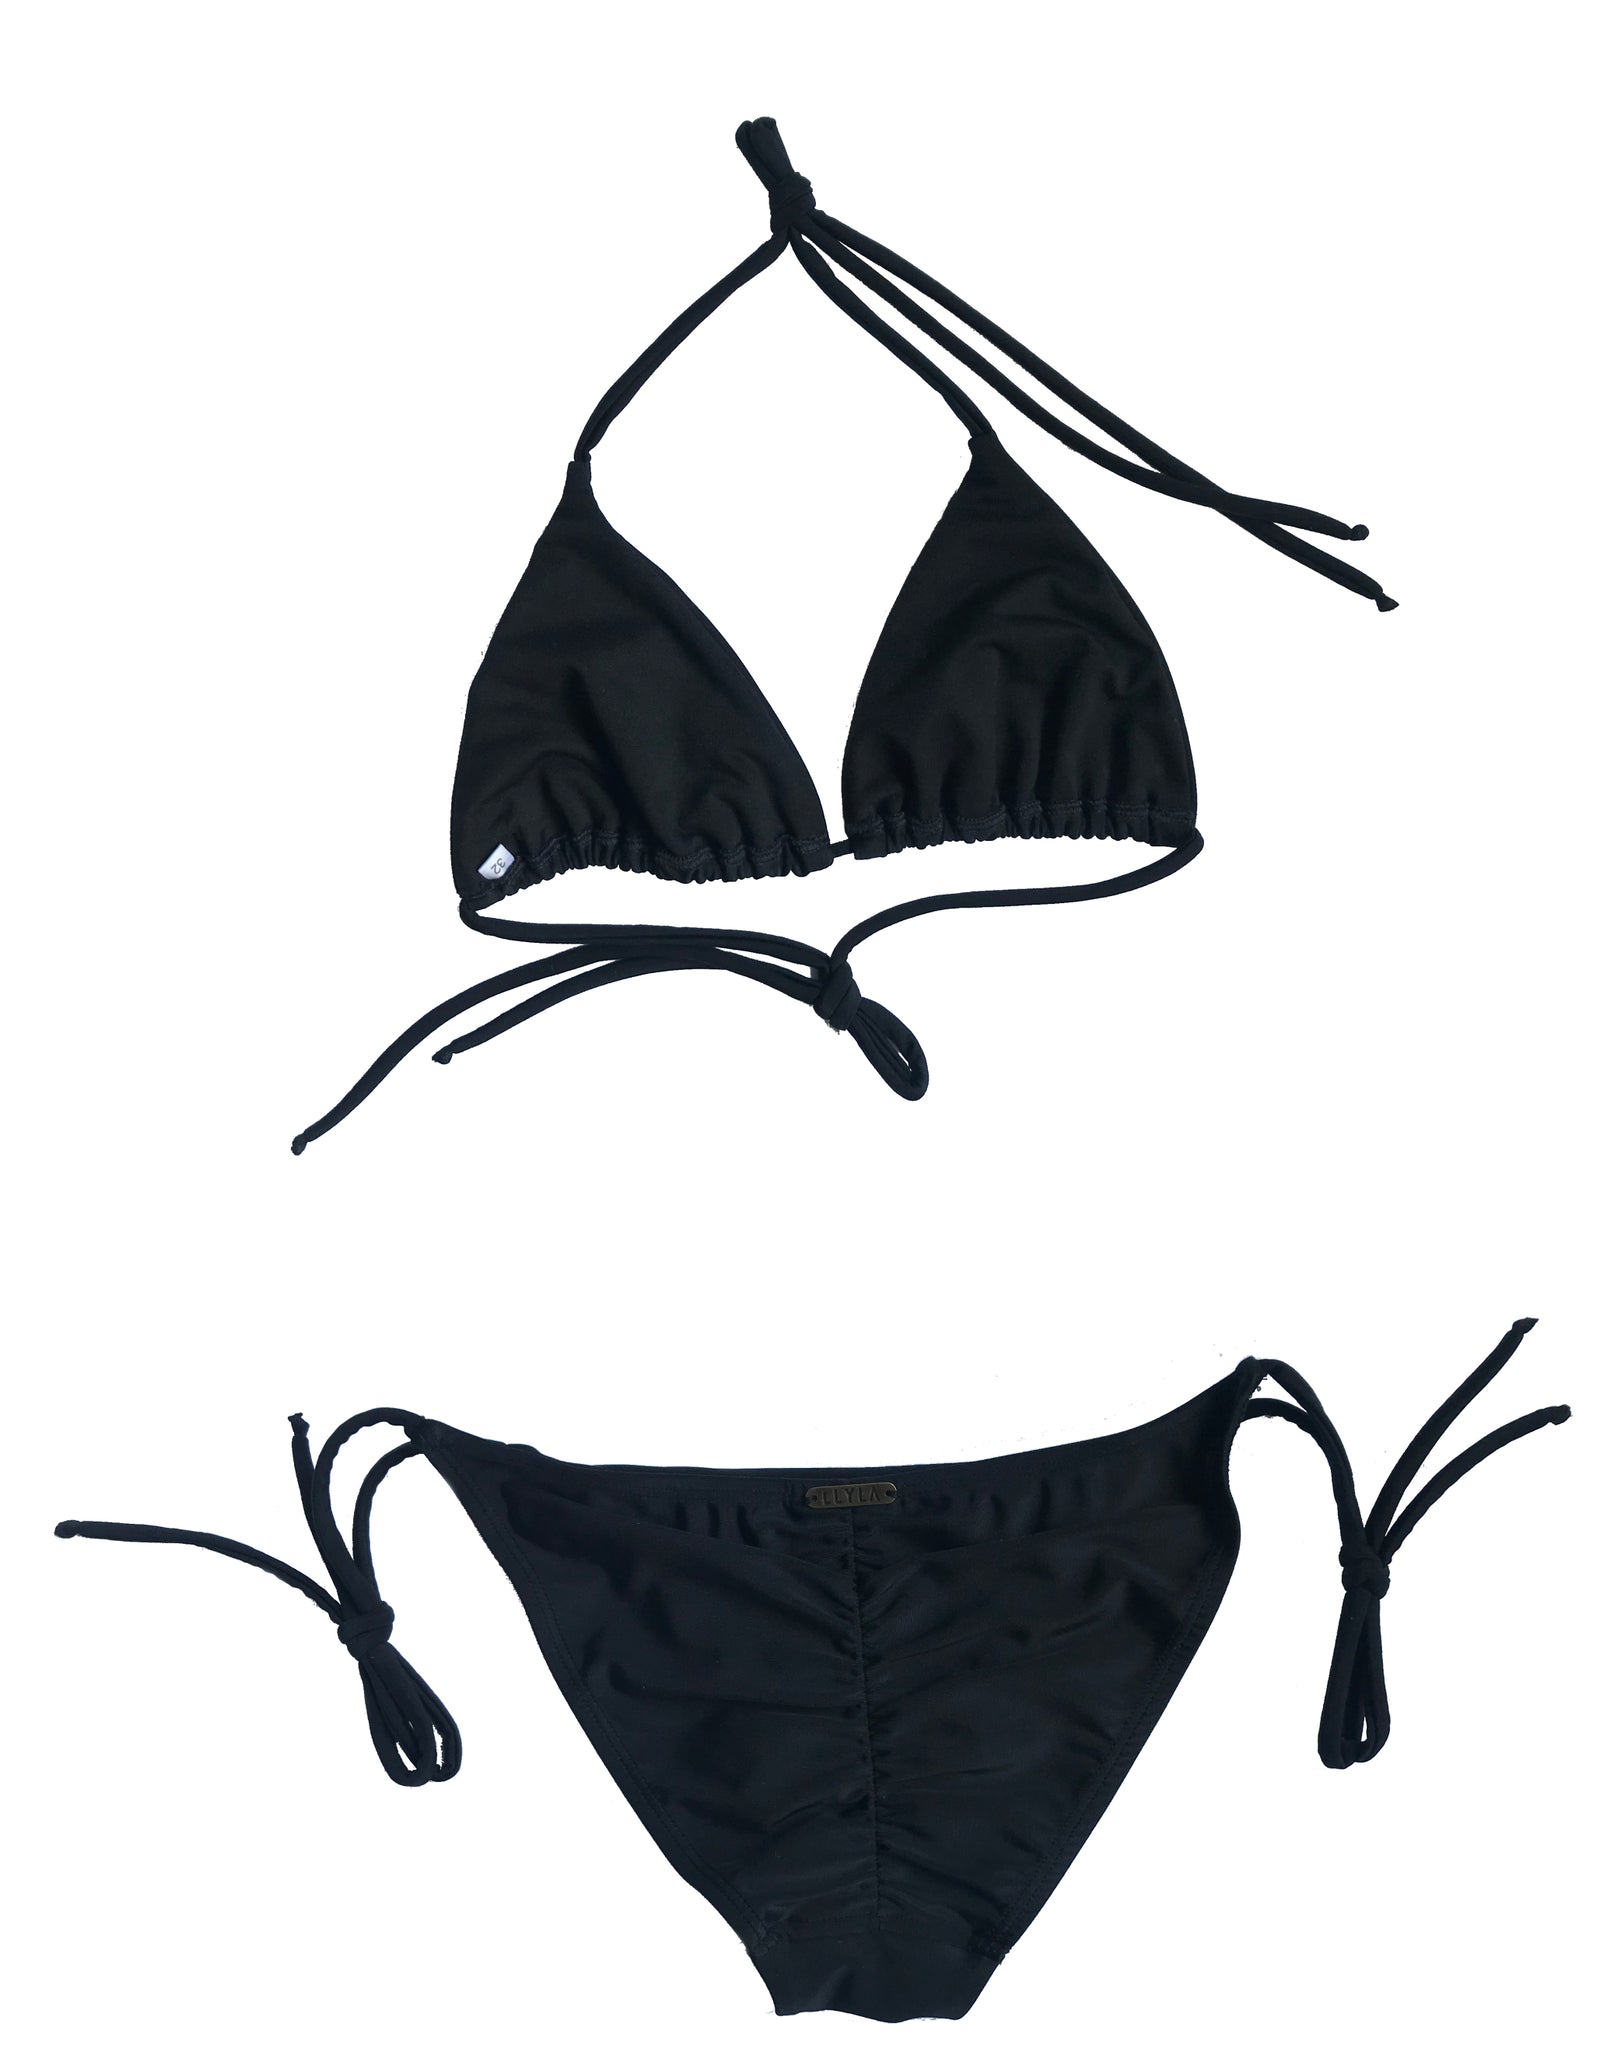 LLYLA Black String Bikini Set - Halterneck triangle bra with ruched ba –  LLYLΛ